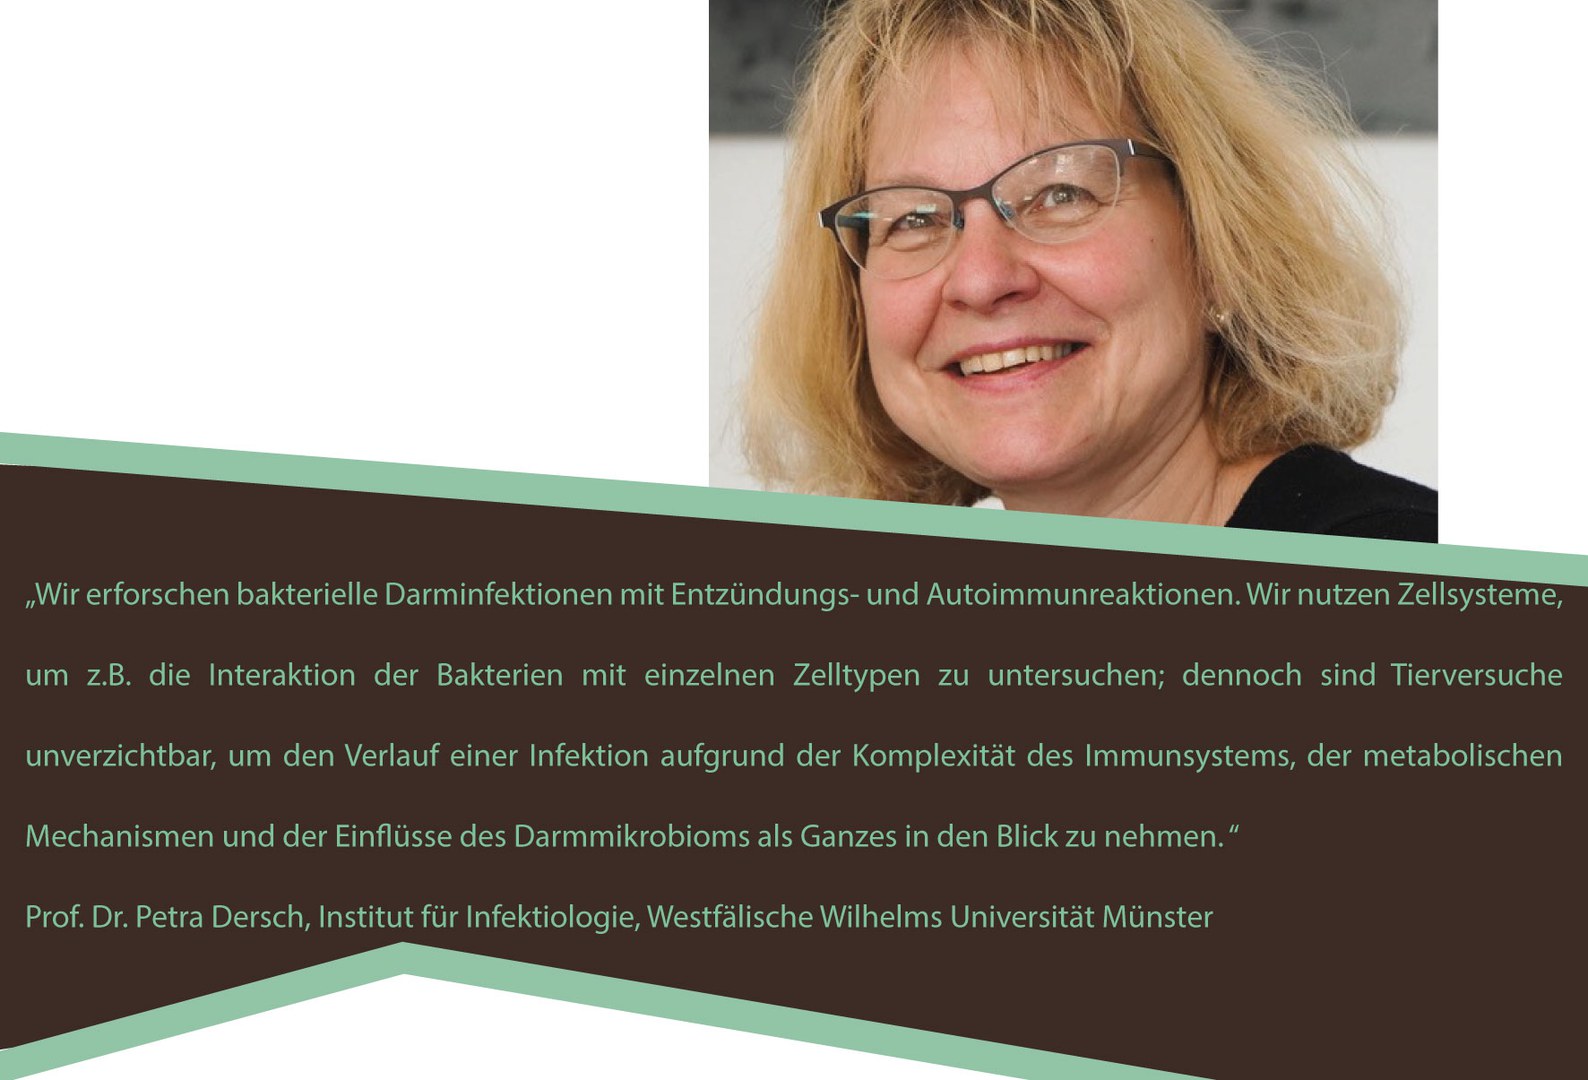 Prof. Dr. Petra Dersch